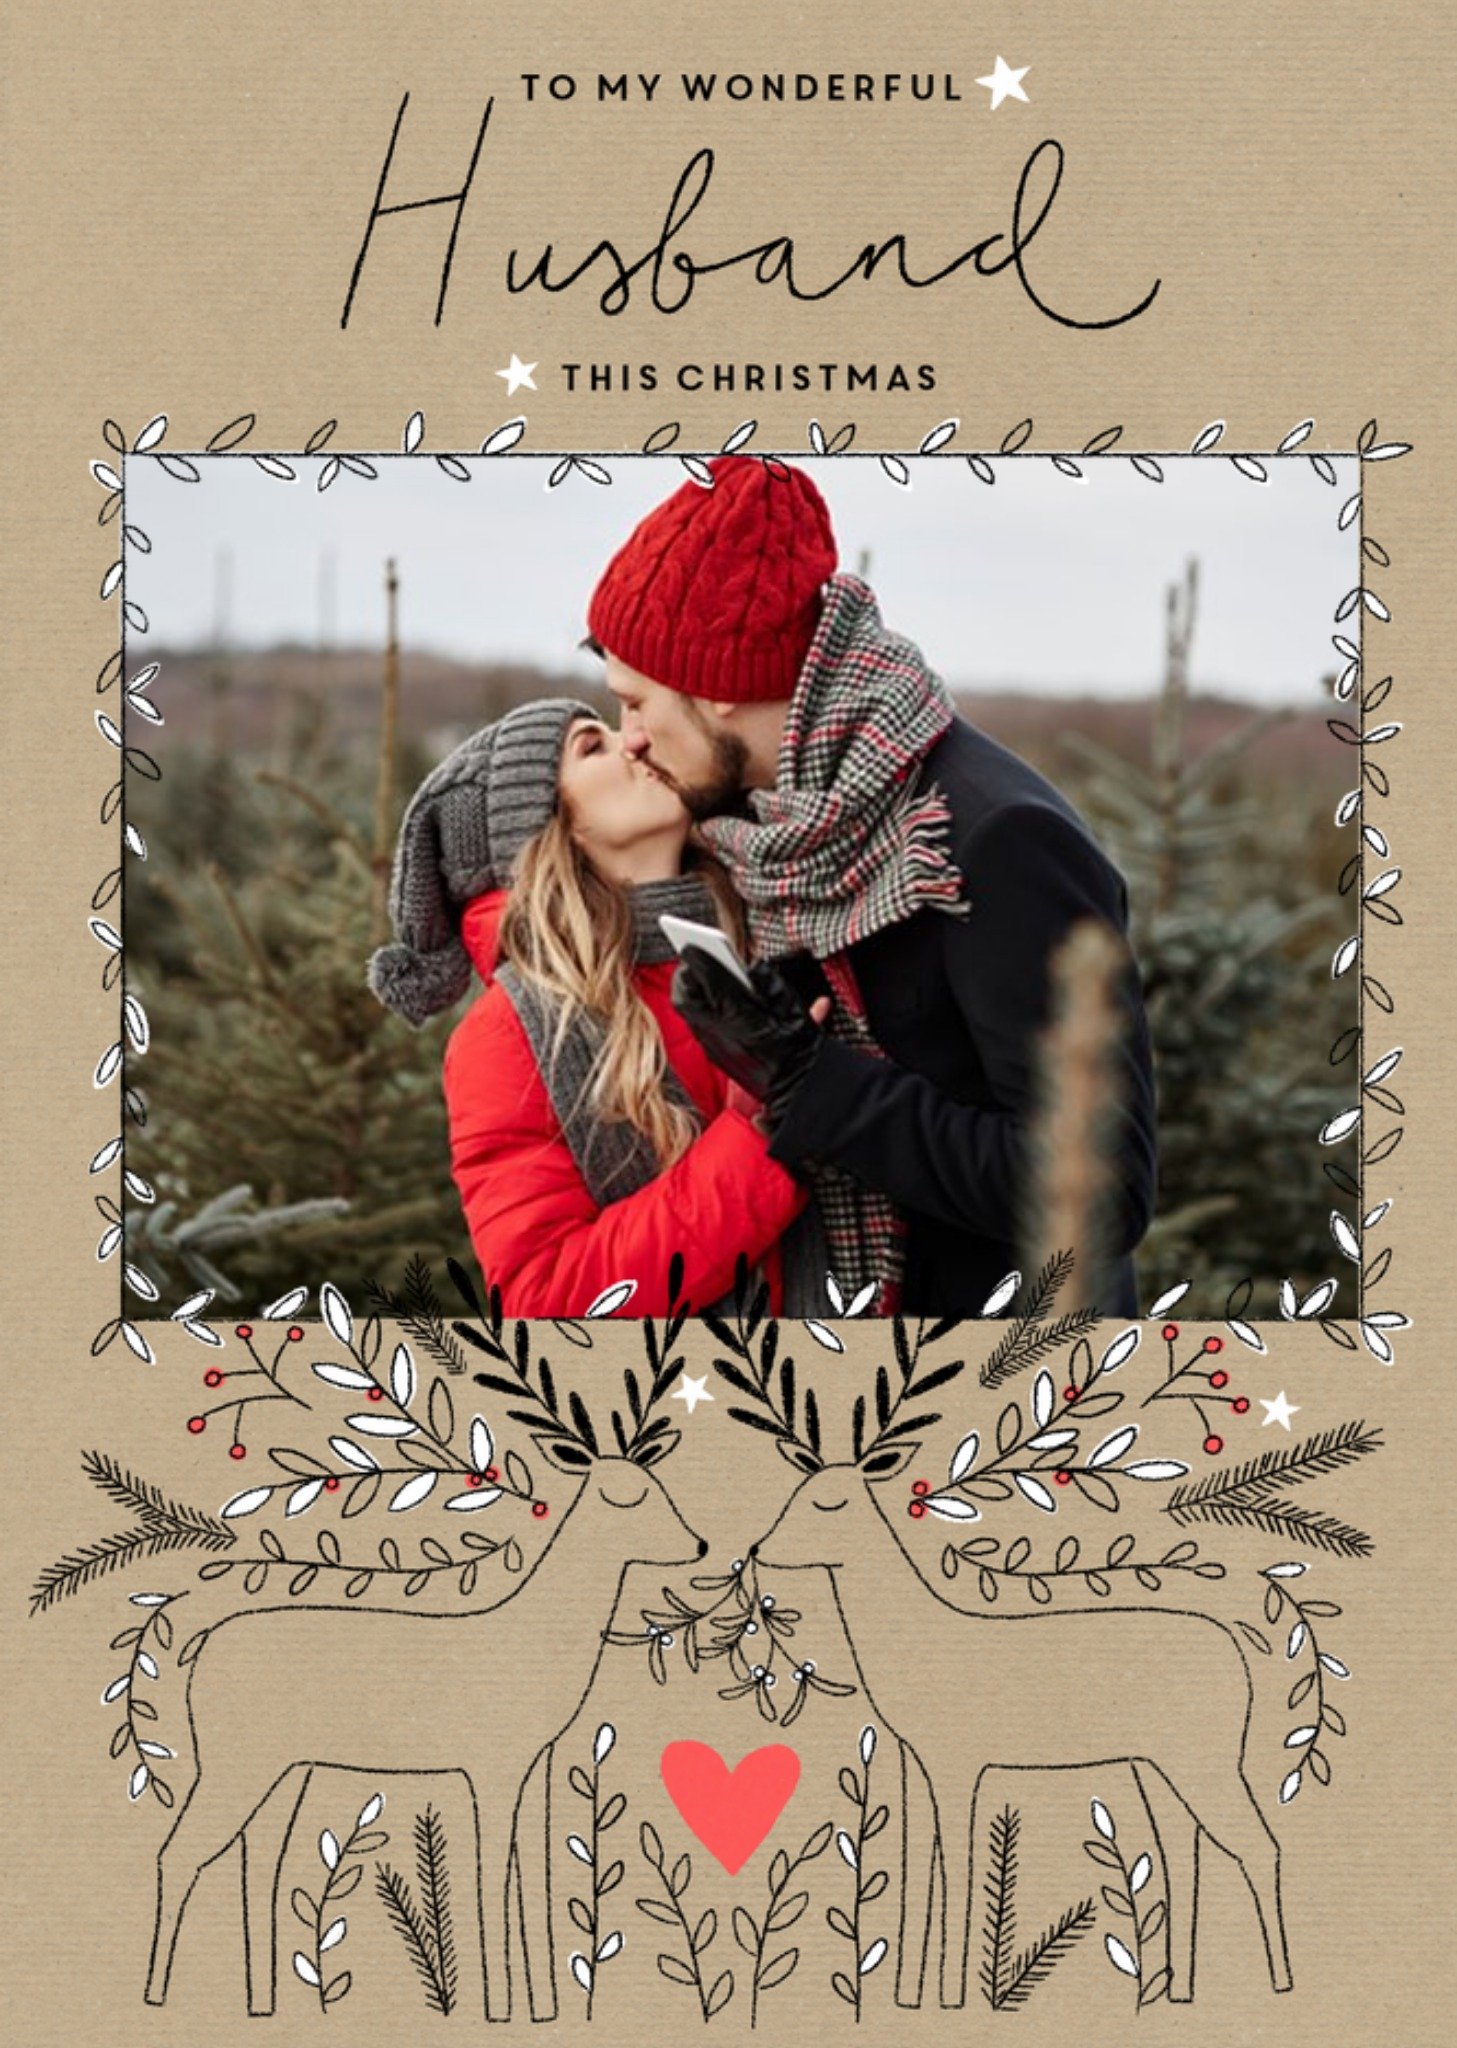 Moonpig Christmas Card - Photo Upload - Husband - Wonderful Husband, Large